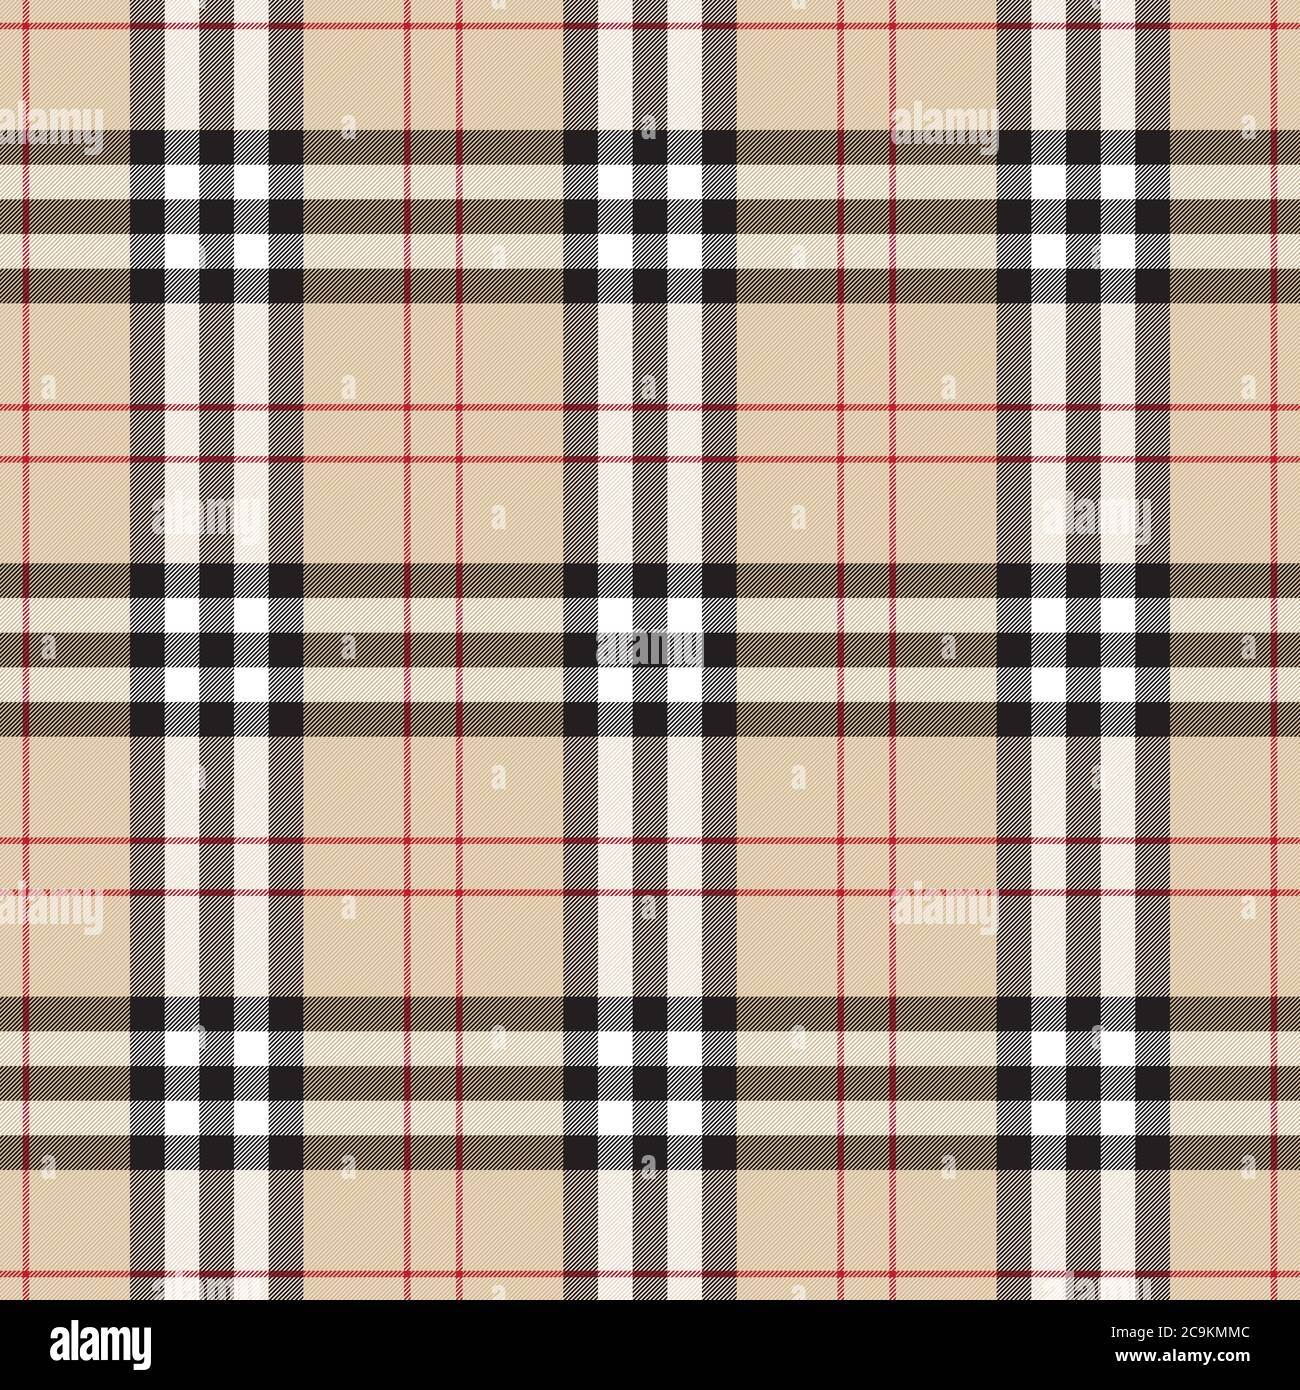 Tradizionale ornamento scozzese in plaid a scacchi. Motivo scozzese vintage senza cuciture. Illustrazione vettoriale a strisce con intersezione geometrica colorata. Illustrazione Vettoriale